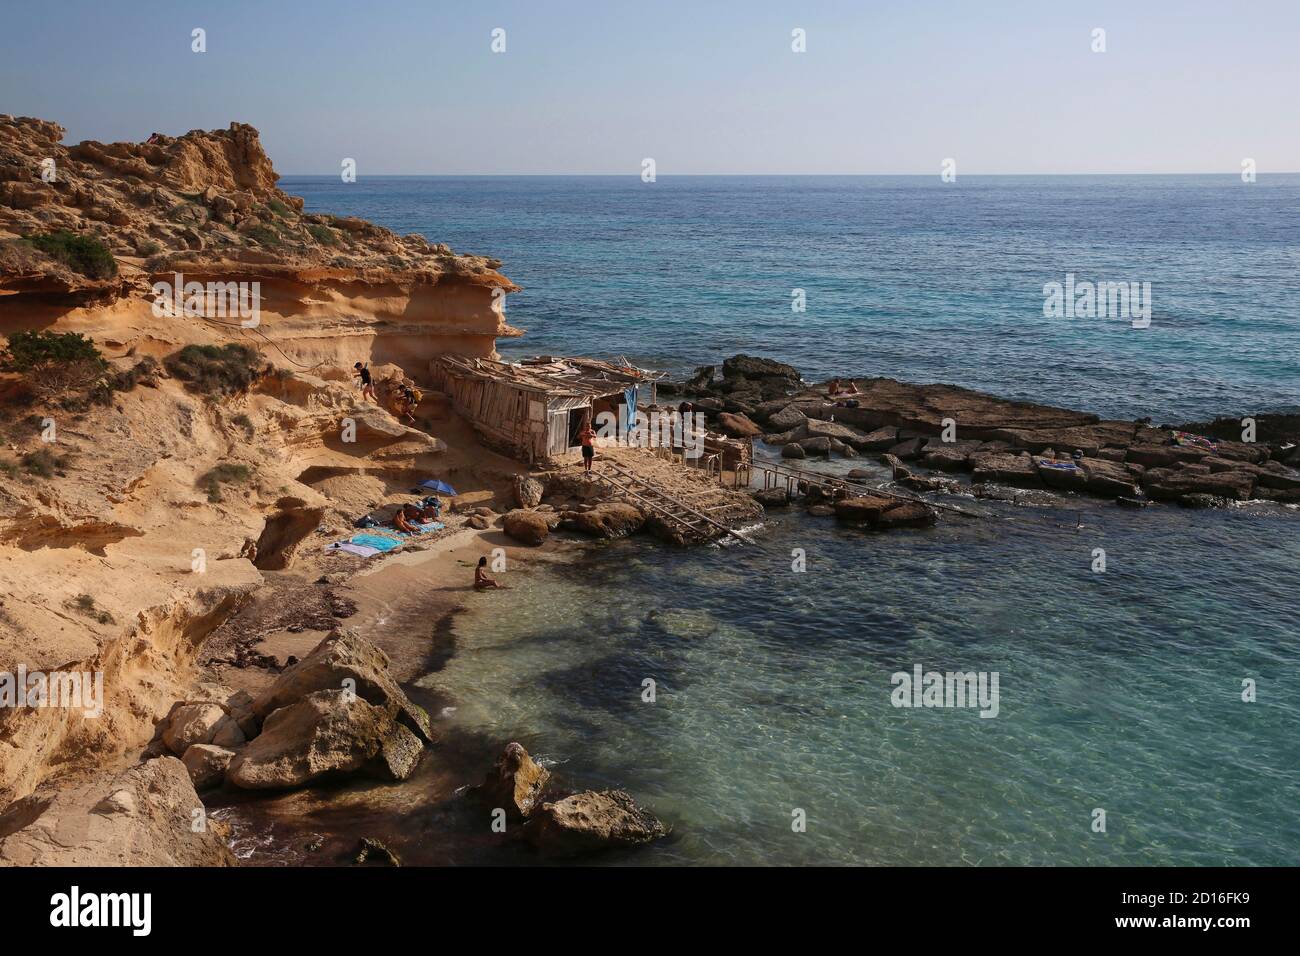 Spagna, Isole Baleari, formentera, calo des mort, visitatori estivi adagiati su una baia fiancheggiata da scogliere rosse e rocce in un forte di acque turchesi Foto Stock